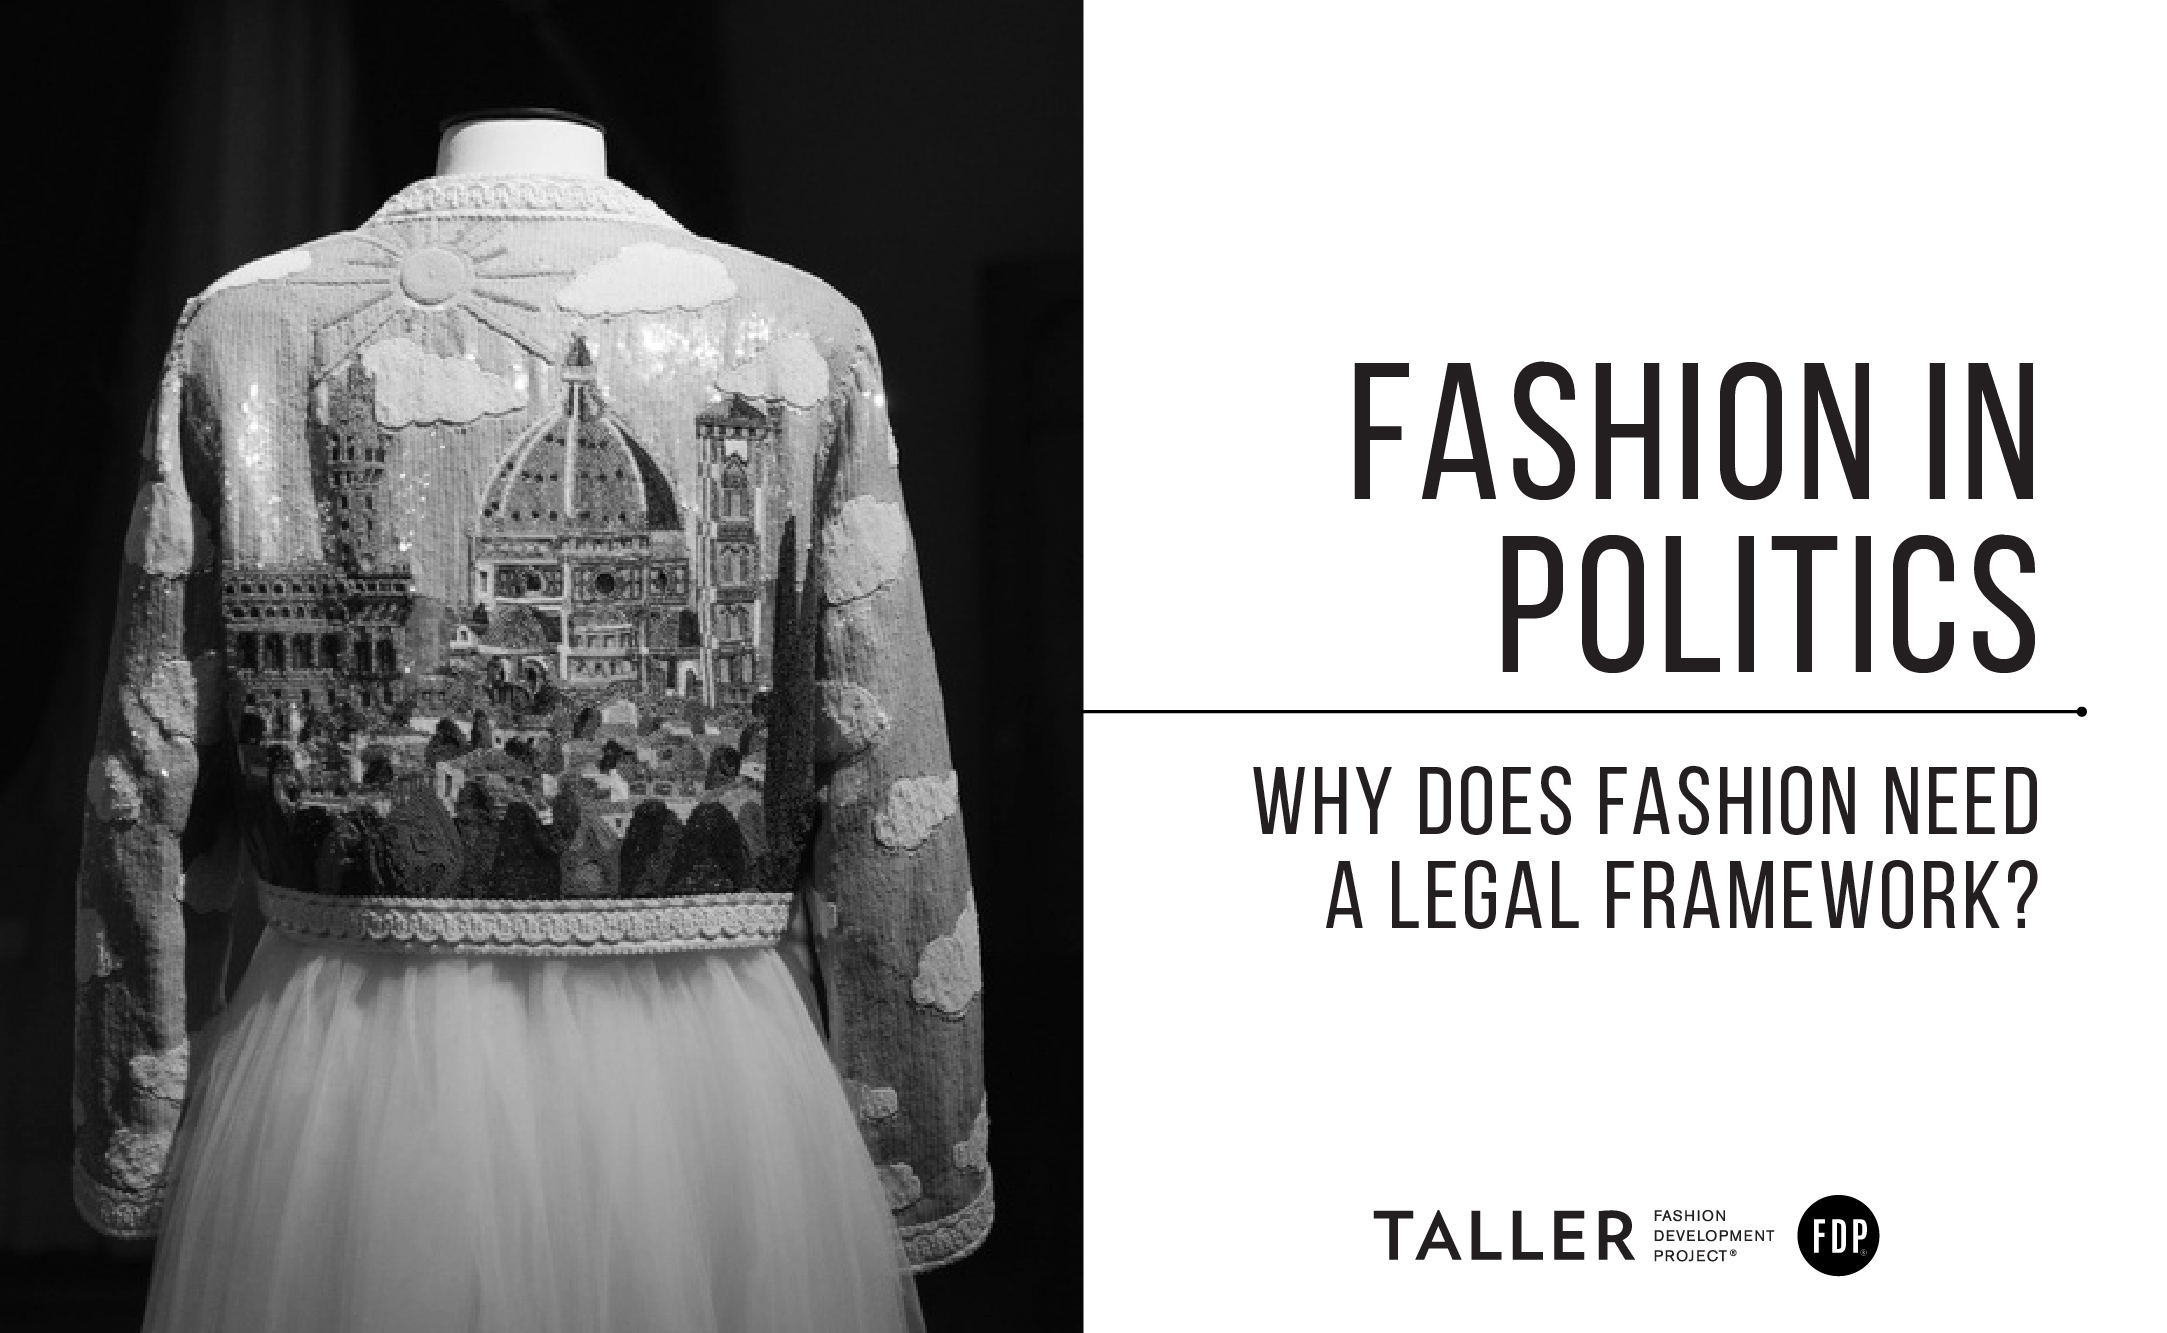 Fashion in Politics: Why does fashion need a legal framework?